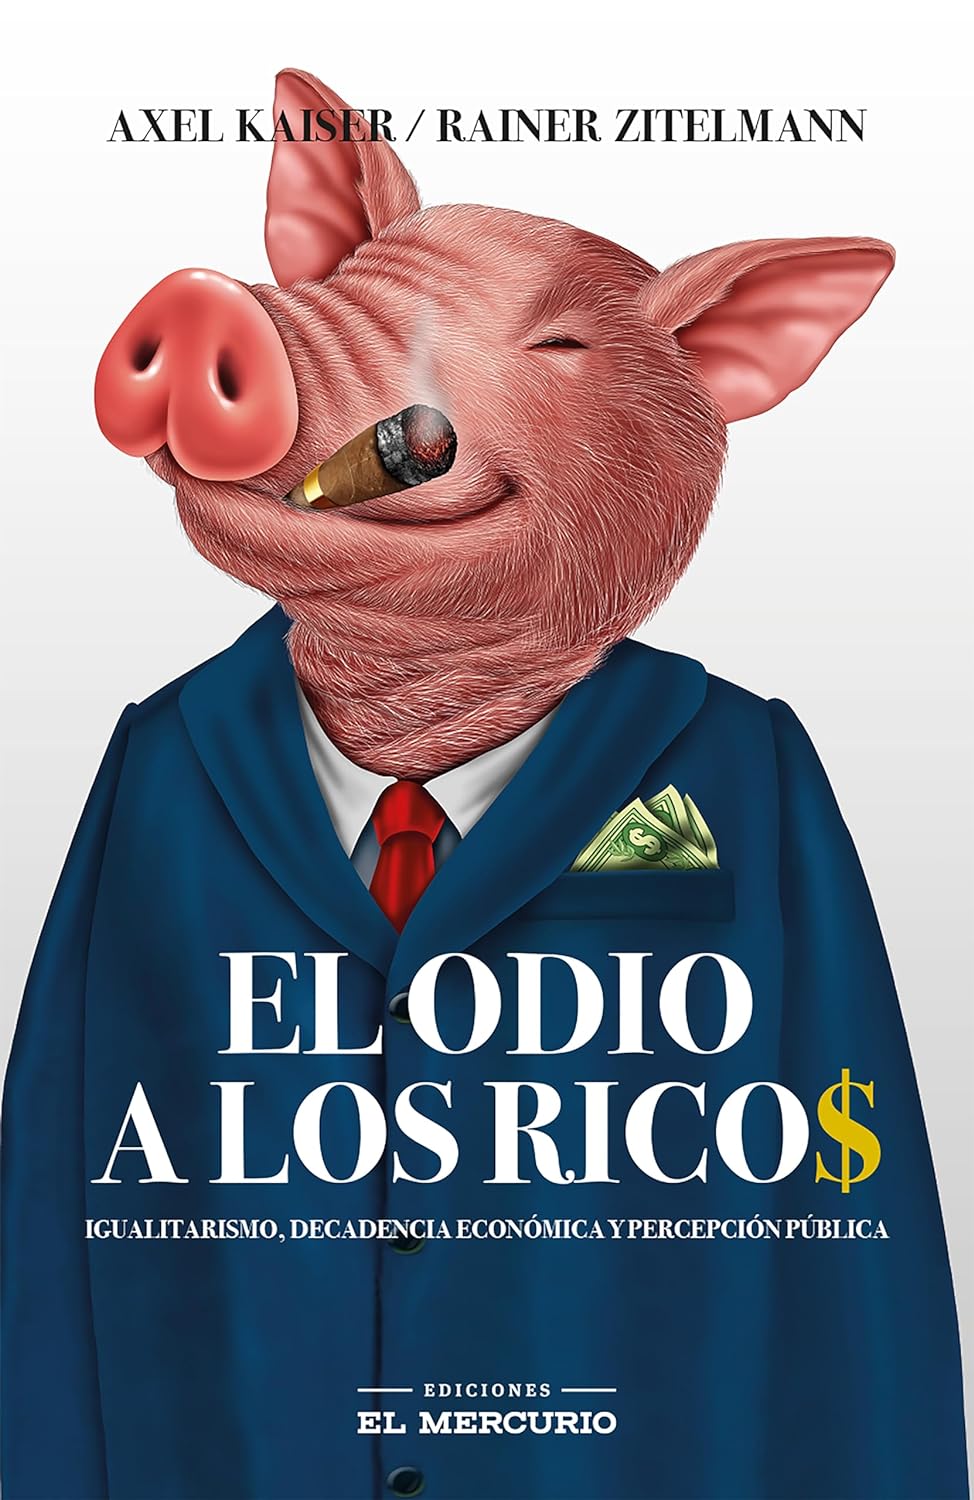 https://www.amazon.com/El-odio-los-ricos-Spanish-ebook/dp/B0CP668WF7